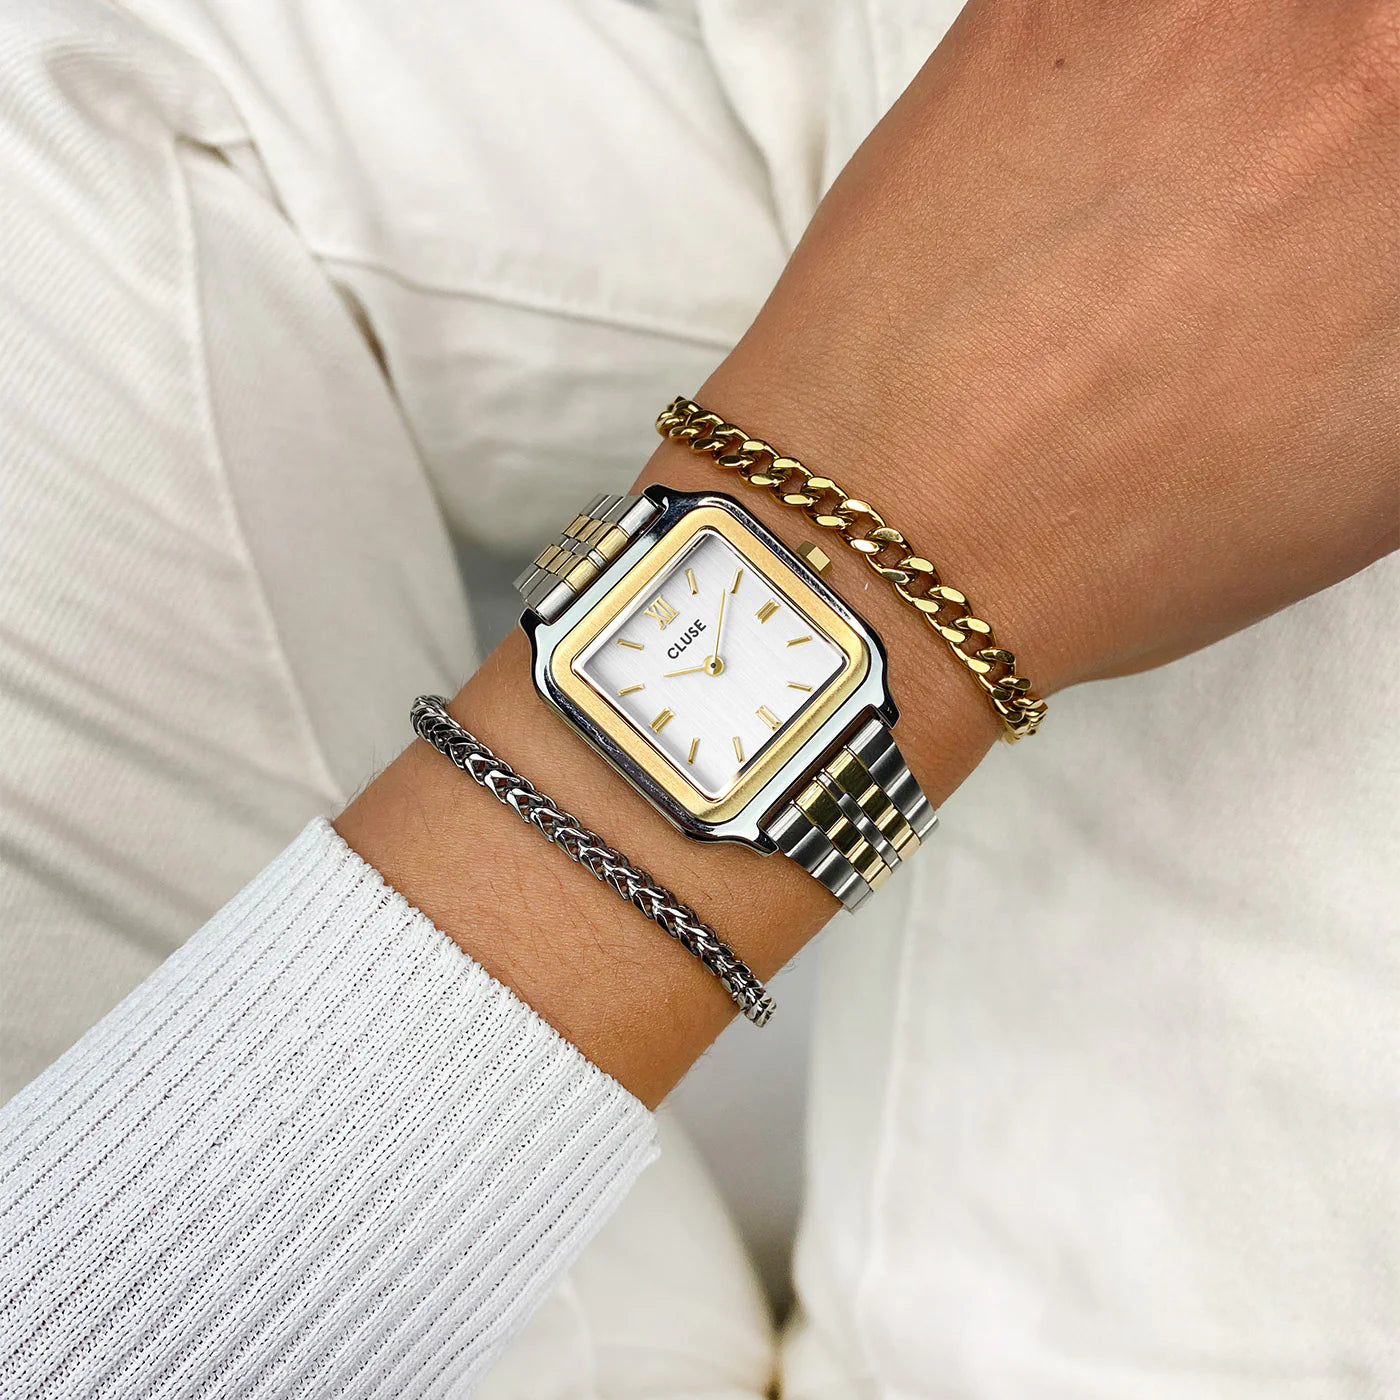 Frau trägt die Cluse Stahl-Uhr "Gracieuse Petite" in Stahl-Gold-Optik (bicolor) mit weißem Zifferblatt und kombiniert diese mit zwei Armbändern